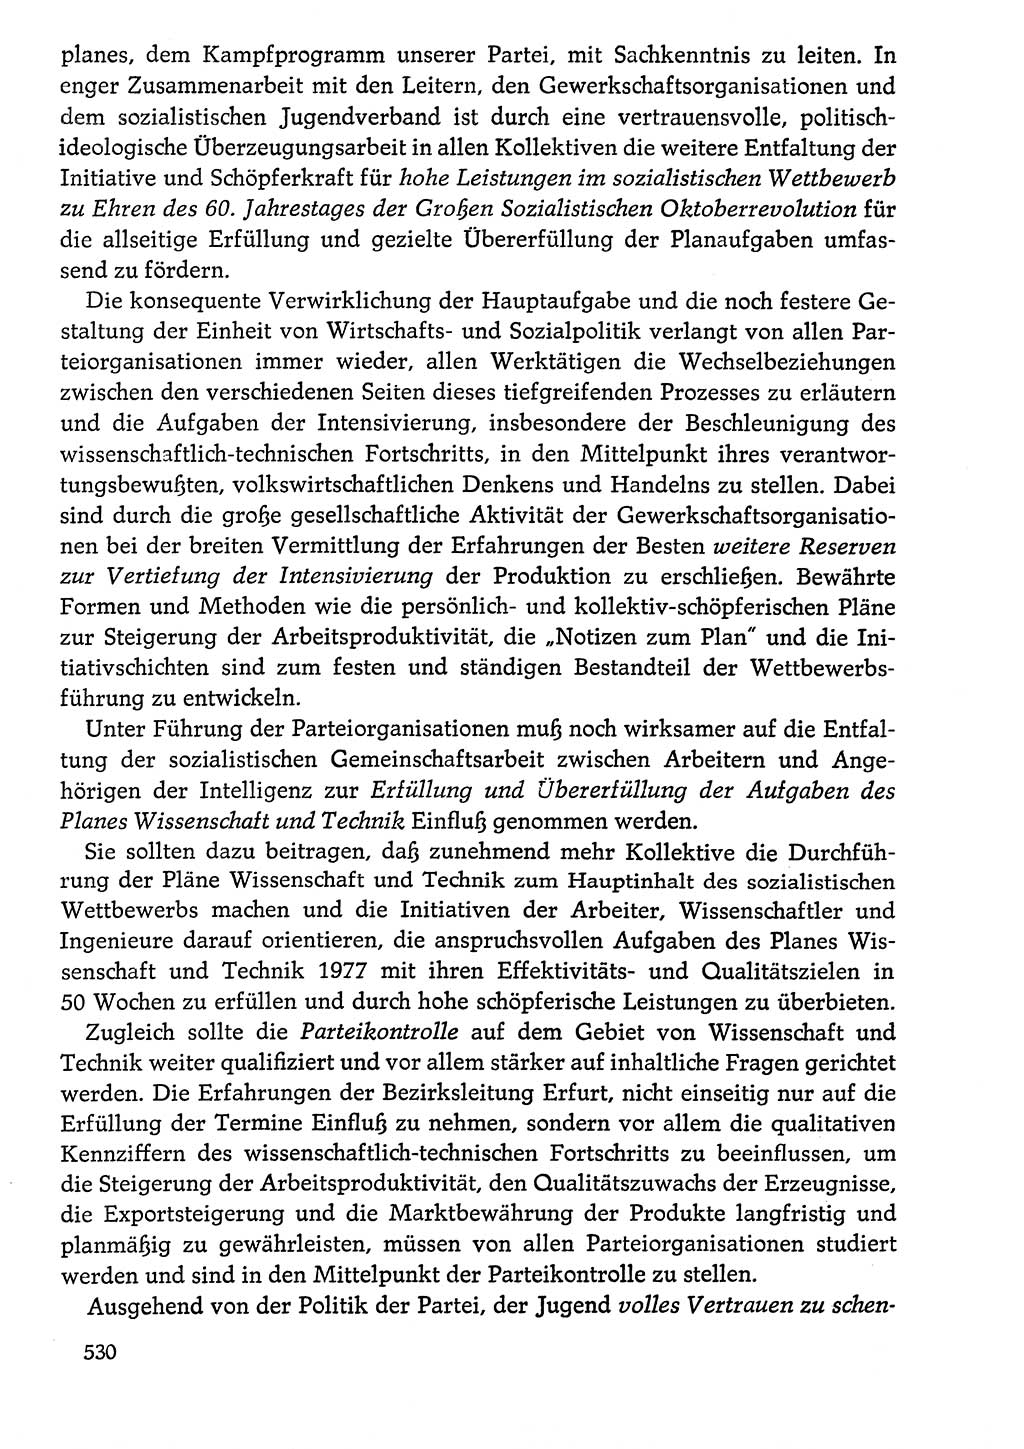 Dokumente der Sozialistischen Einheitspartei Deutschlands (SED) [Deutsche Demokratische Republik (DDR)] 1976-1977, Seite 530 (Dok. SED DDR 1976-1977, S. 530)